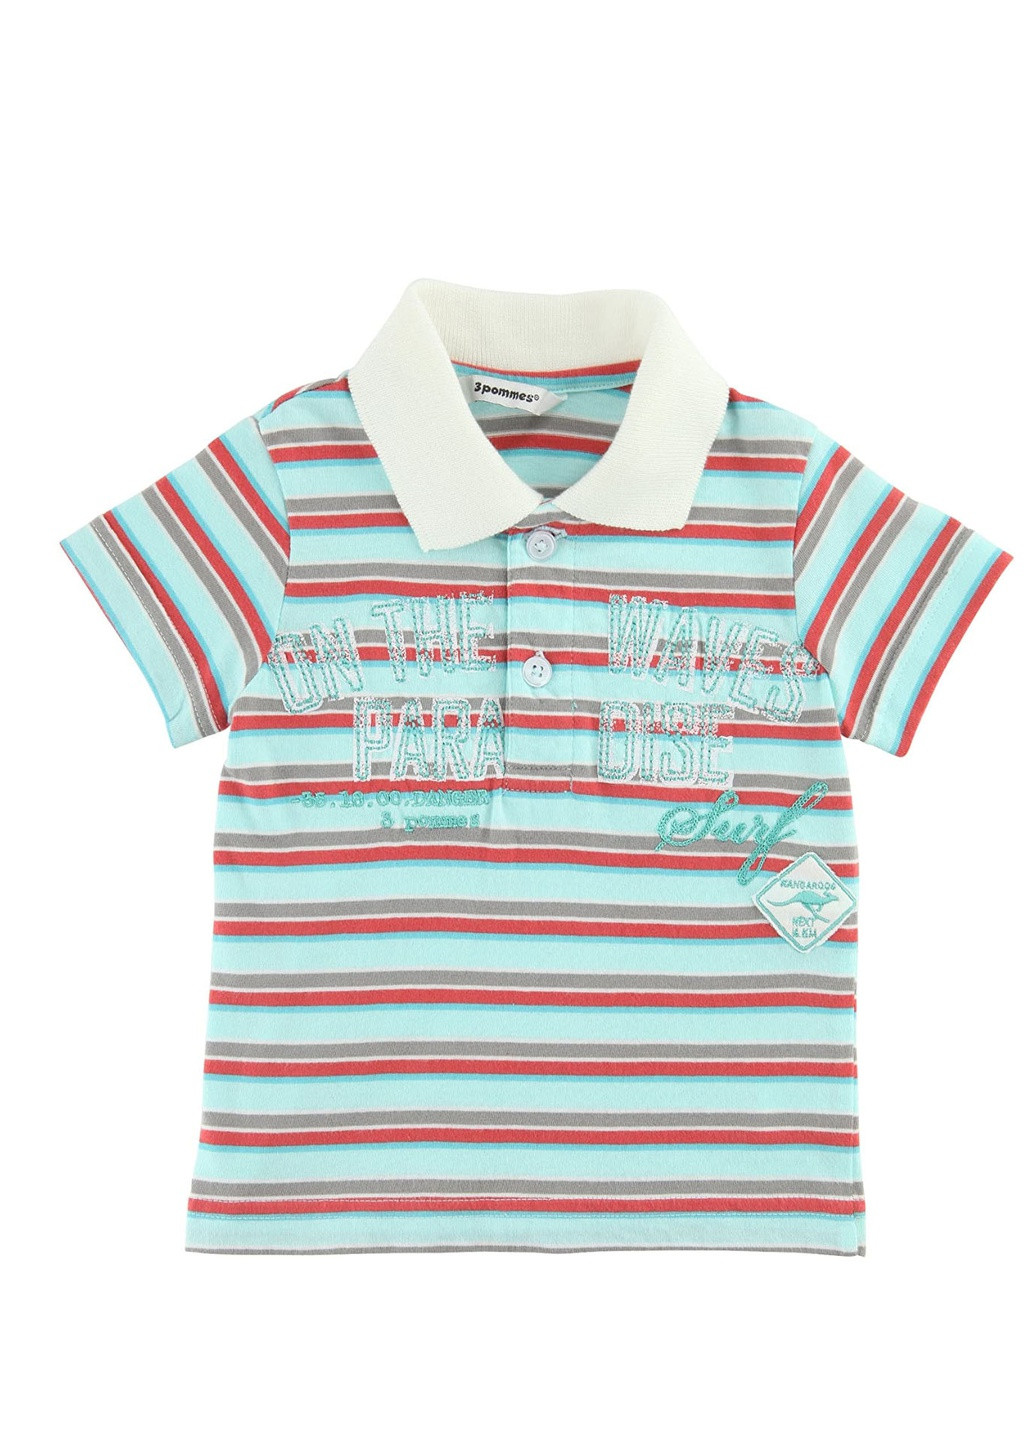 Цветная детская футболка-поло для мальчика 3 Pommes